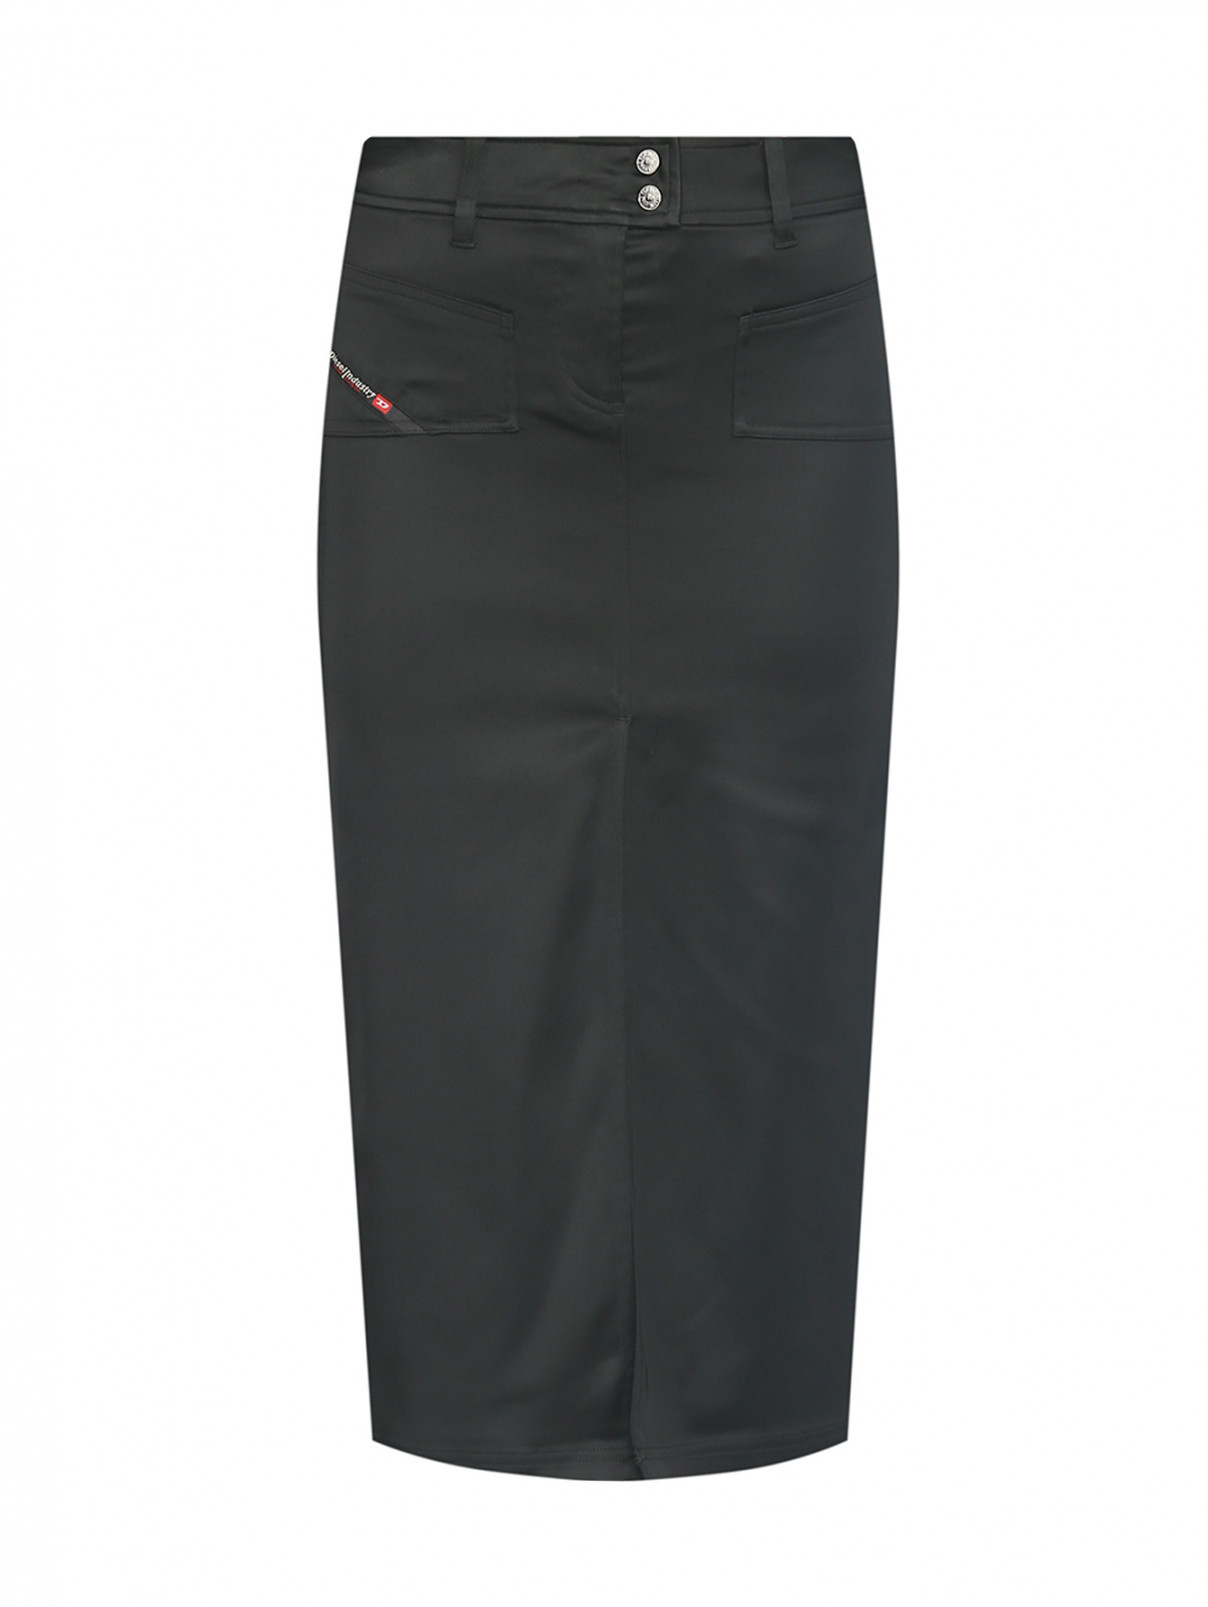 Атласная юбка с разрезами и накладными карманами Diesel  –  Общий вид  – Цвет:  Черный